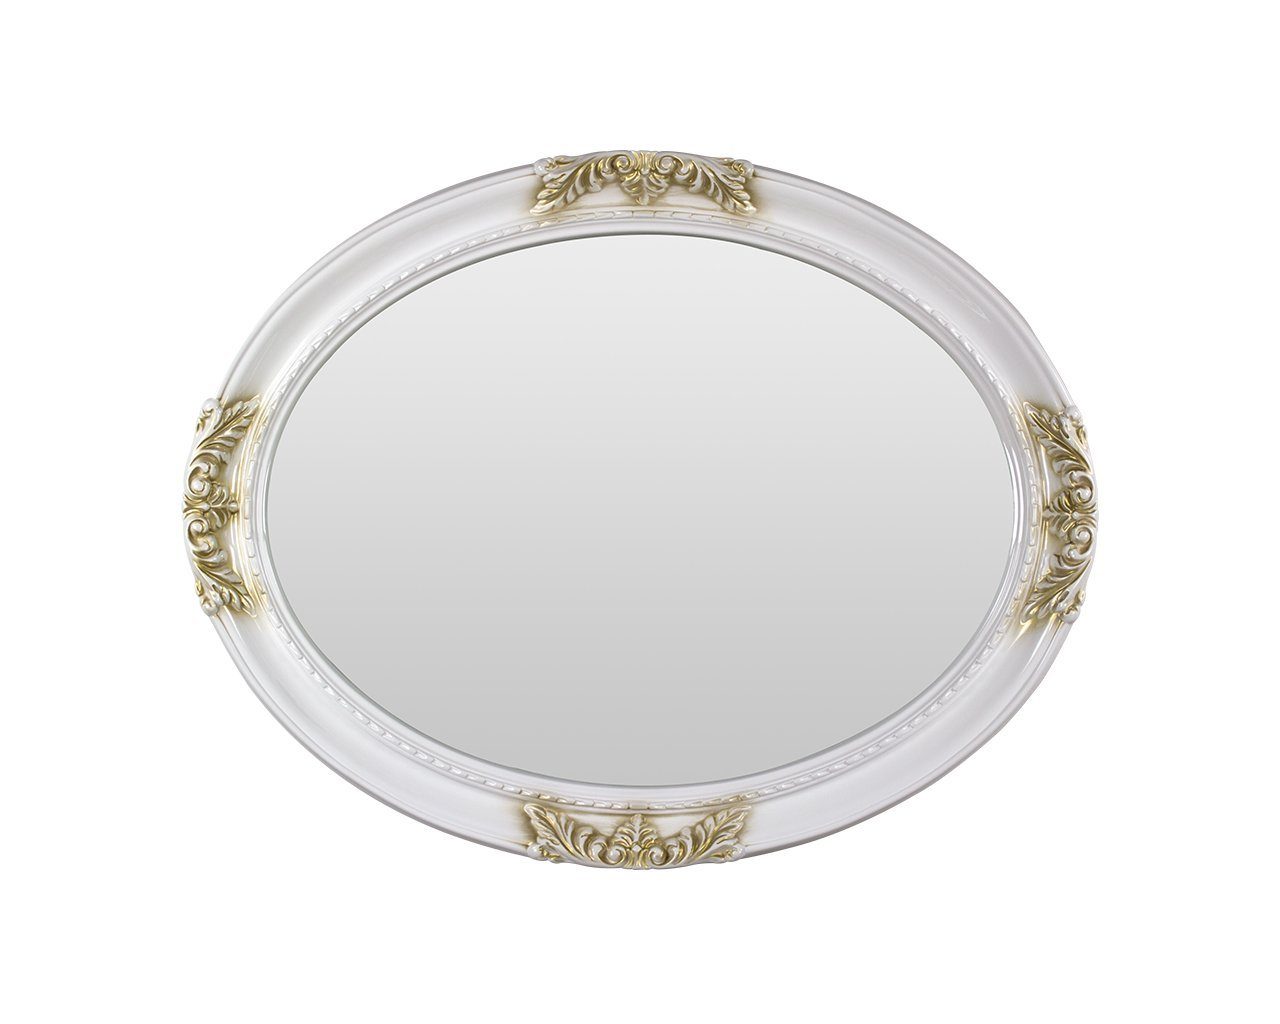 Interdesign24 Wandspiegel Remo-Oro (im klassischen Barock Stil), Gerahmter, Ovaler Spiegel mit Verzierungen in Weiss/Gold